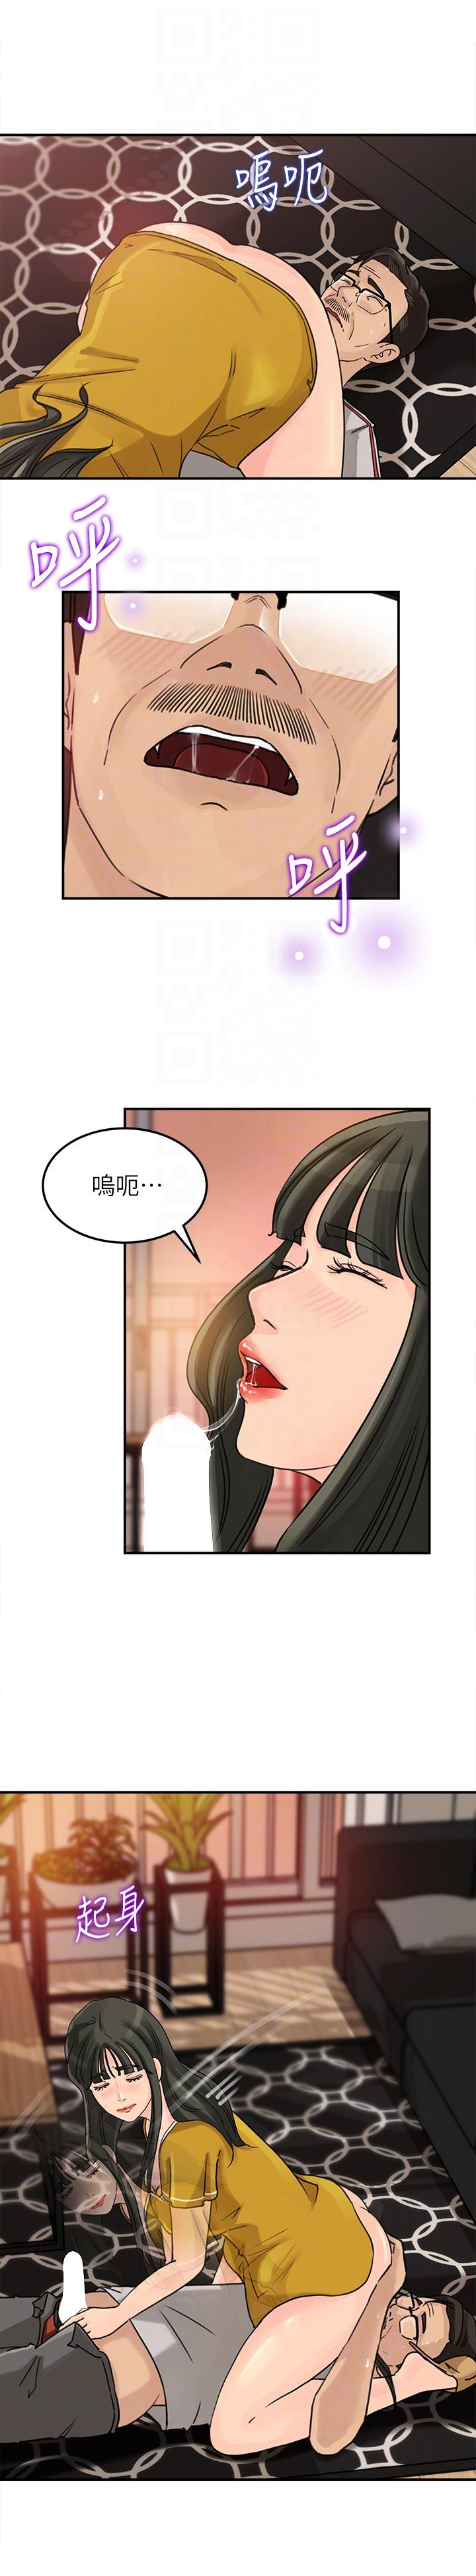 韩国污漫画 媳婦的誘惑 第17话-兽性大发的薇娜 15